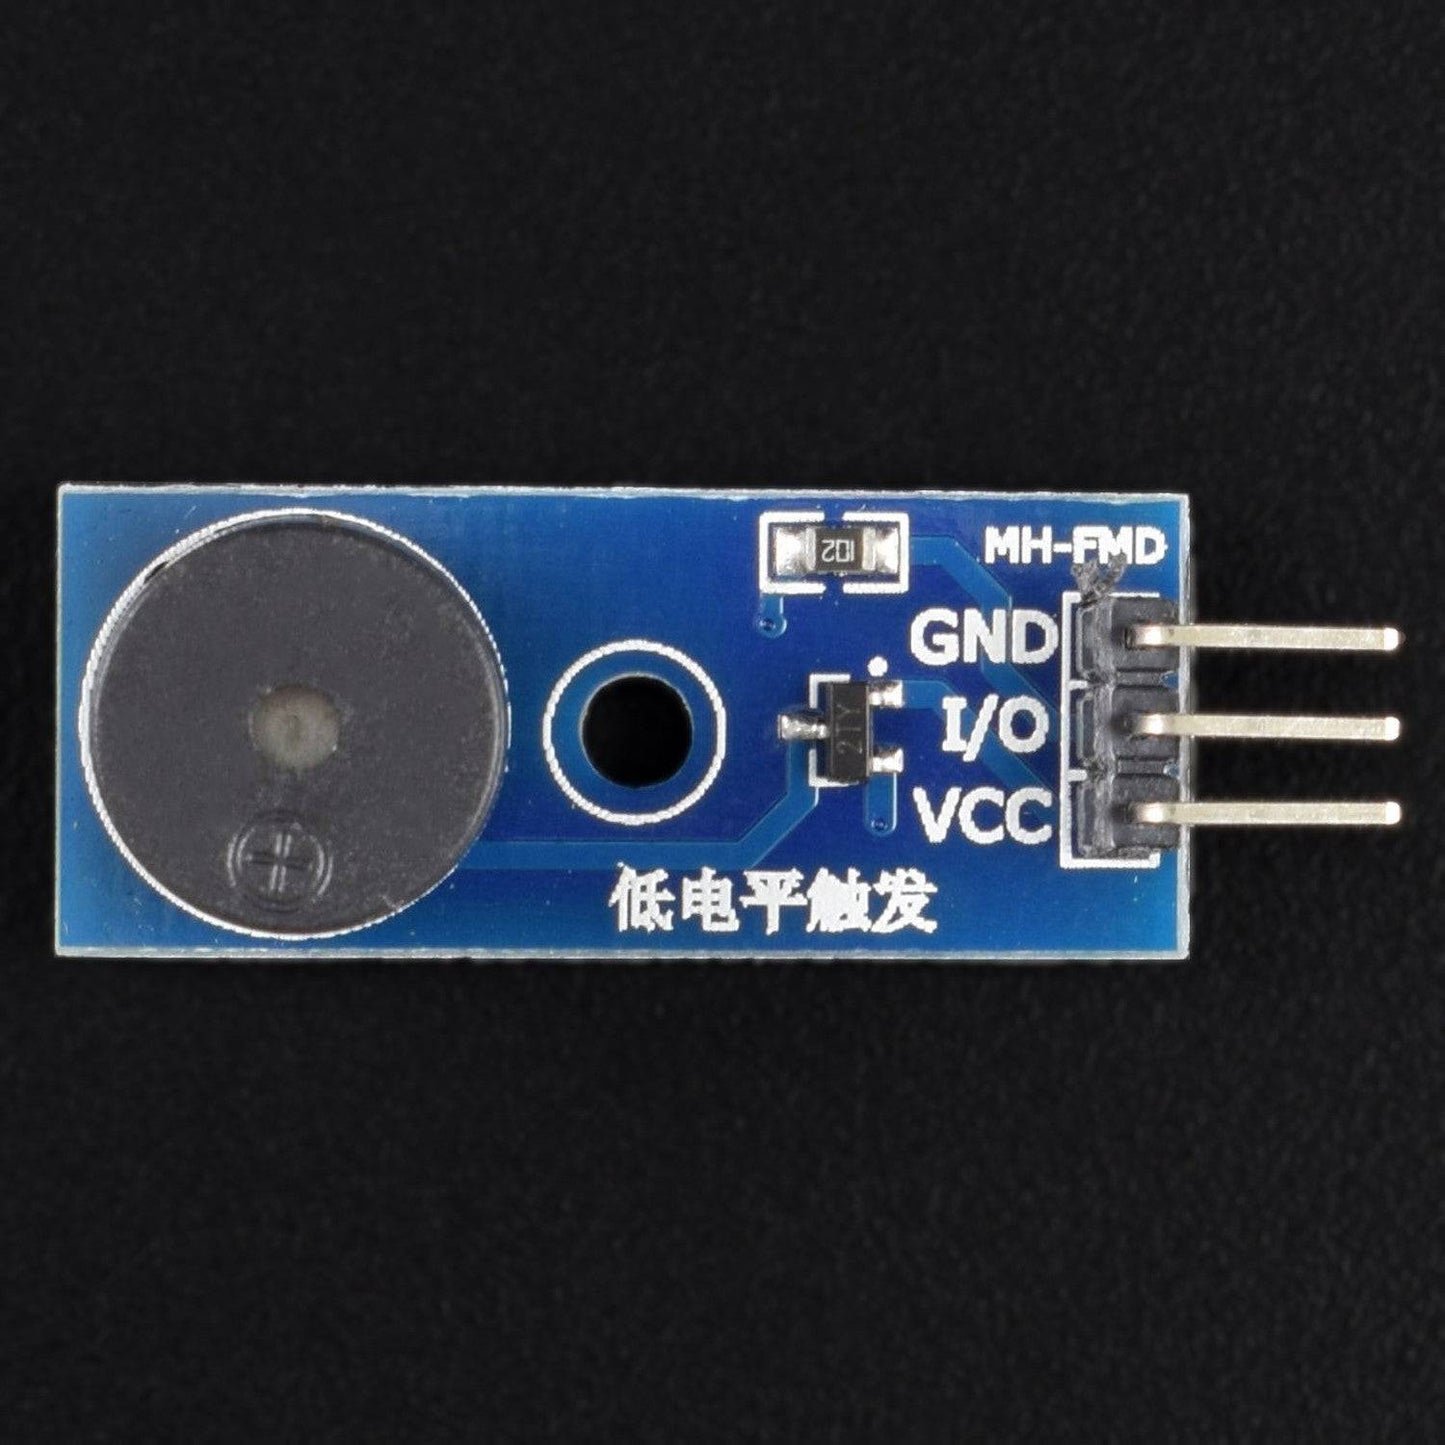 3.3-5V Active Buzzer Alarm Module For Arduino - AA117 - REES52